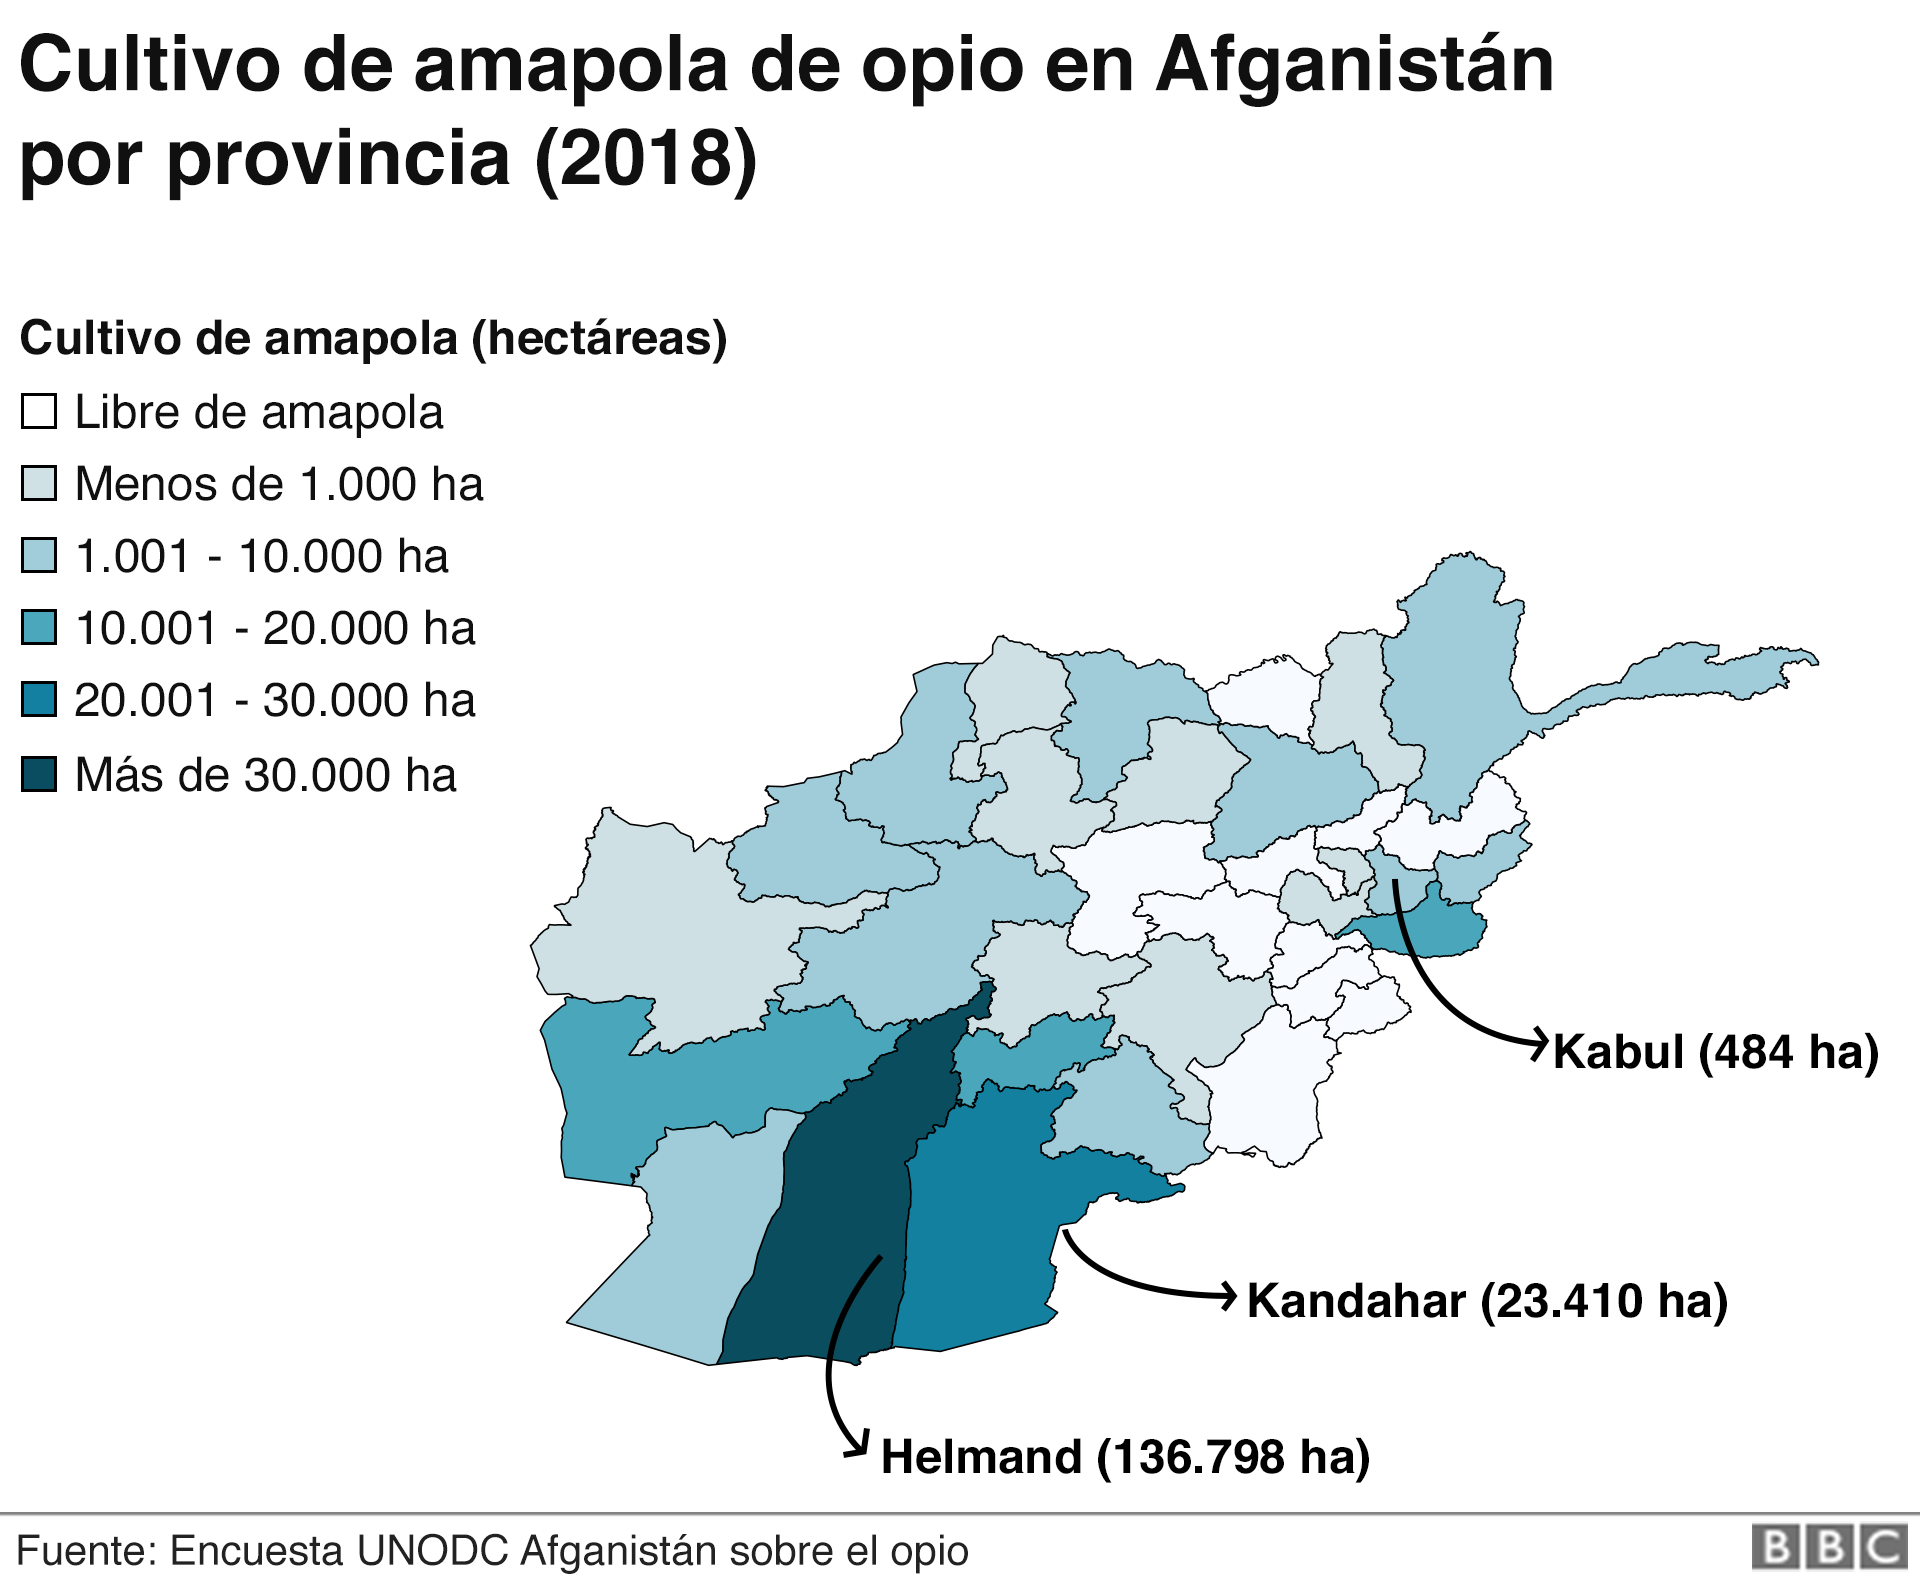 El mapa muestra las áreas de Afganistán donde se cultiva la mayor cantidad de amapola de opio.